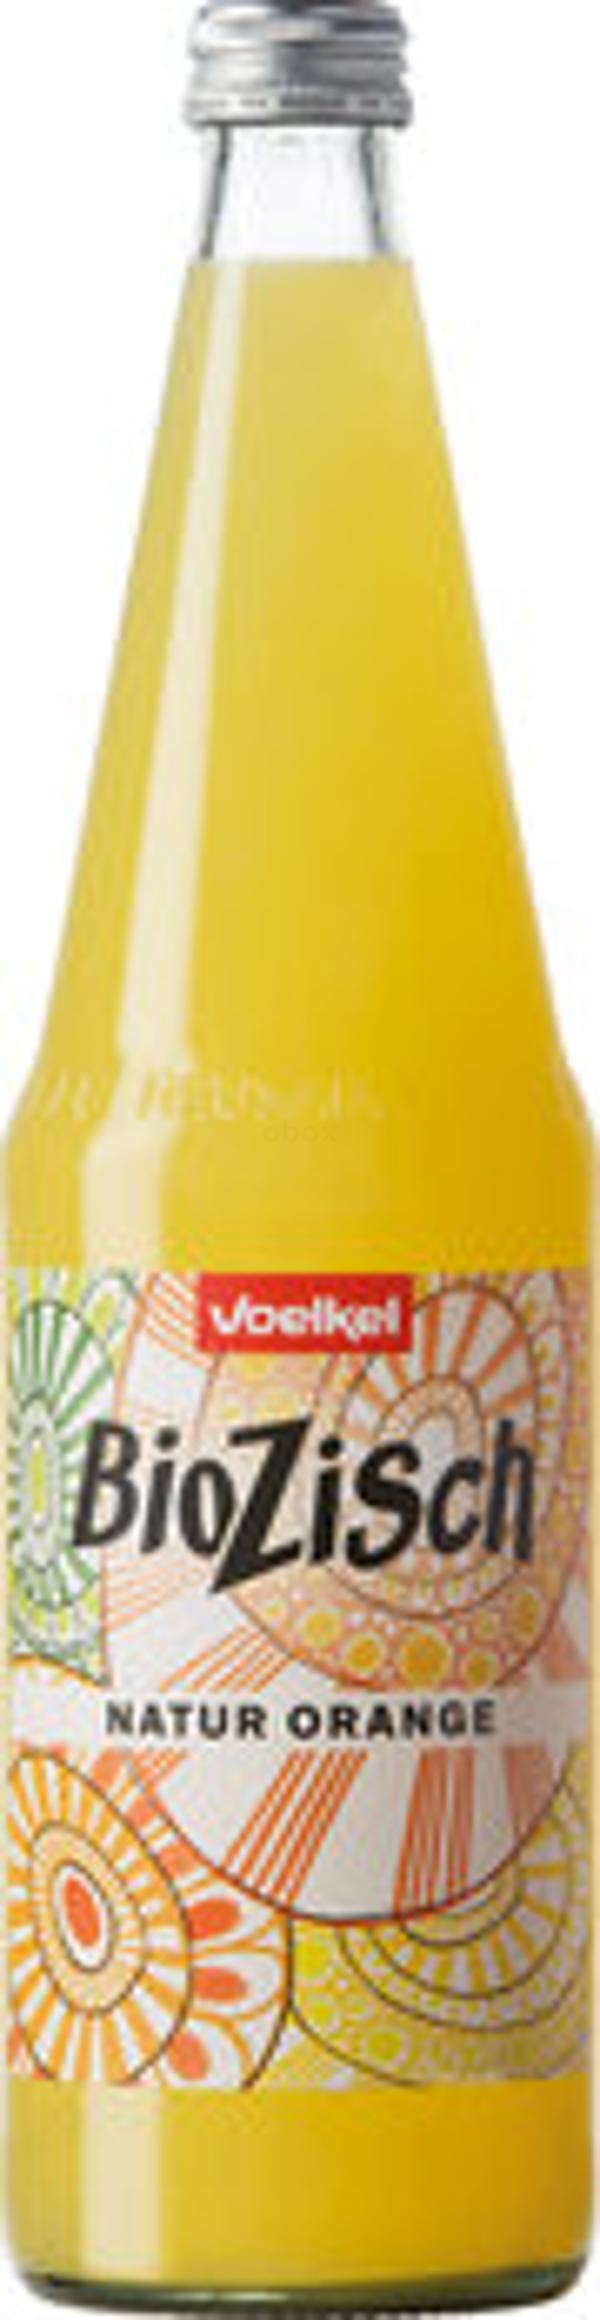 Produktfoto zu BioZisch Orange